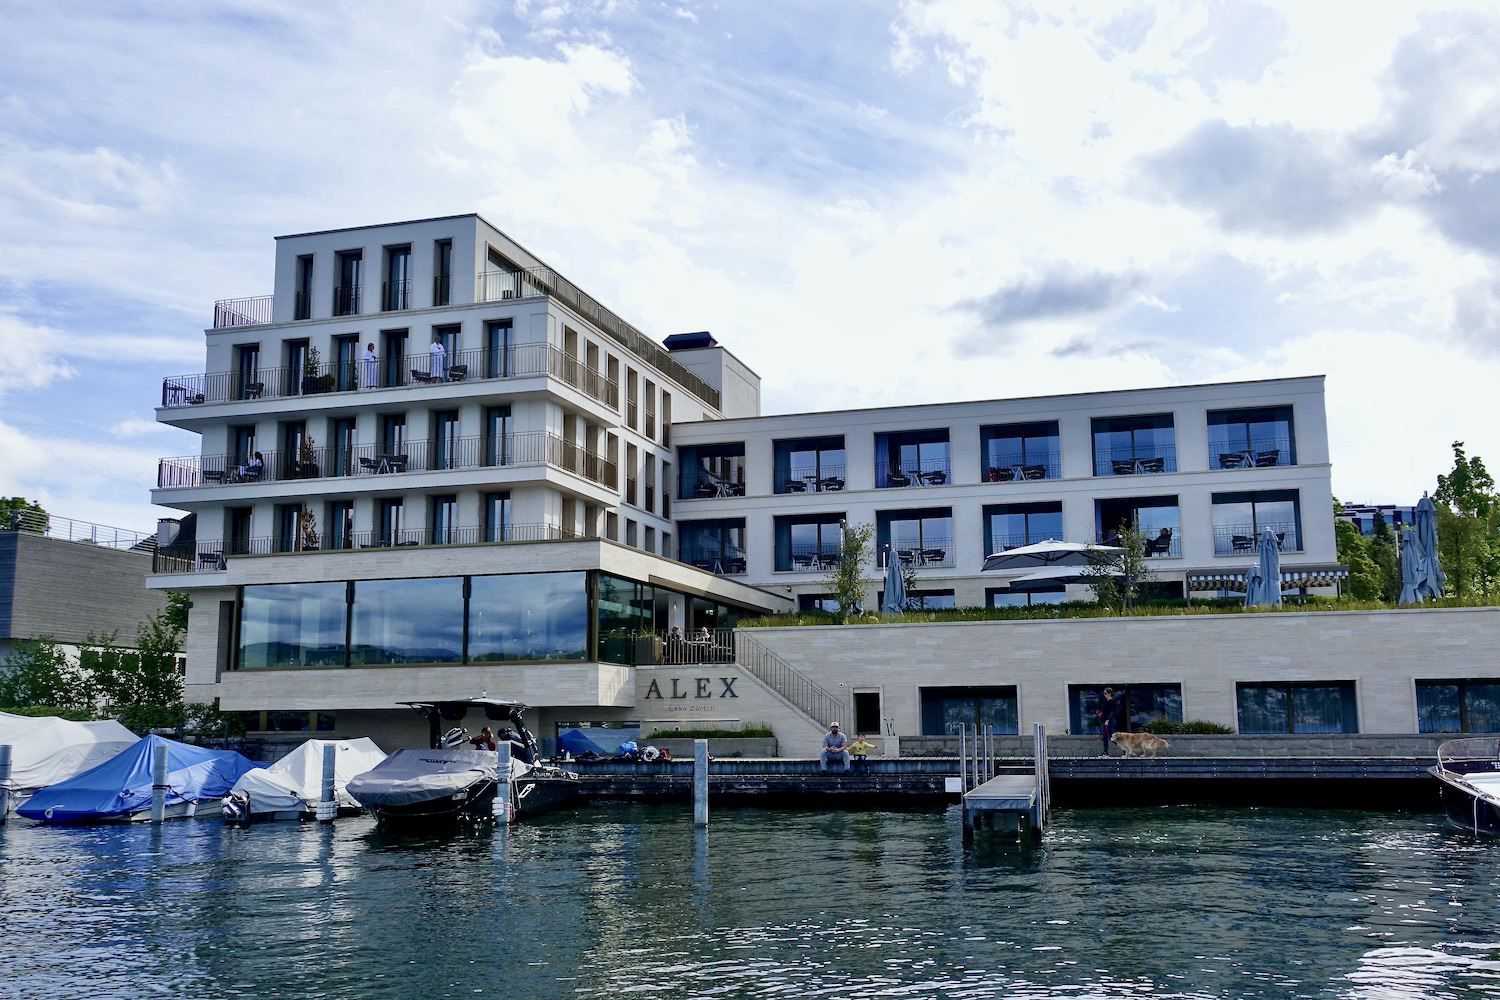 Alex Lake Zurich - luxury hotels Switzerland part two